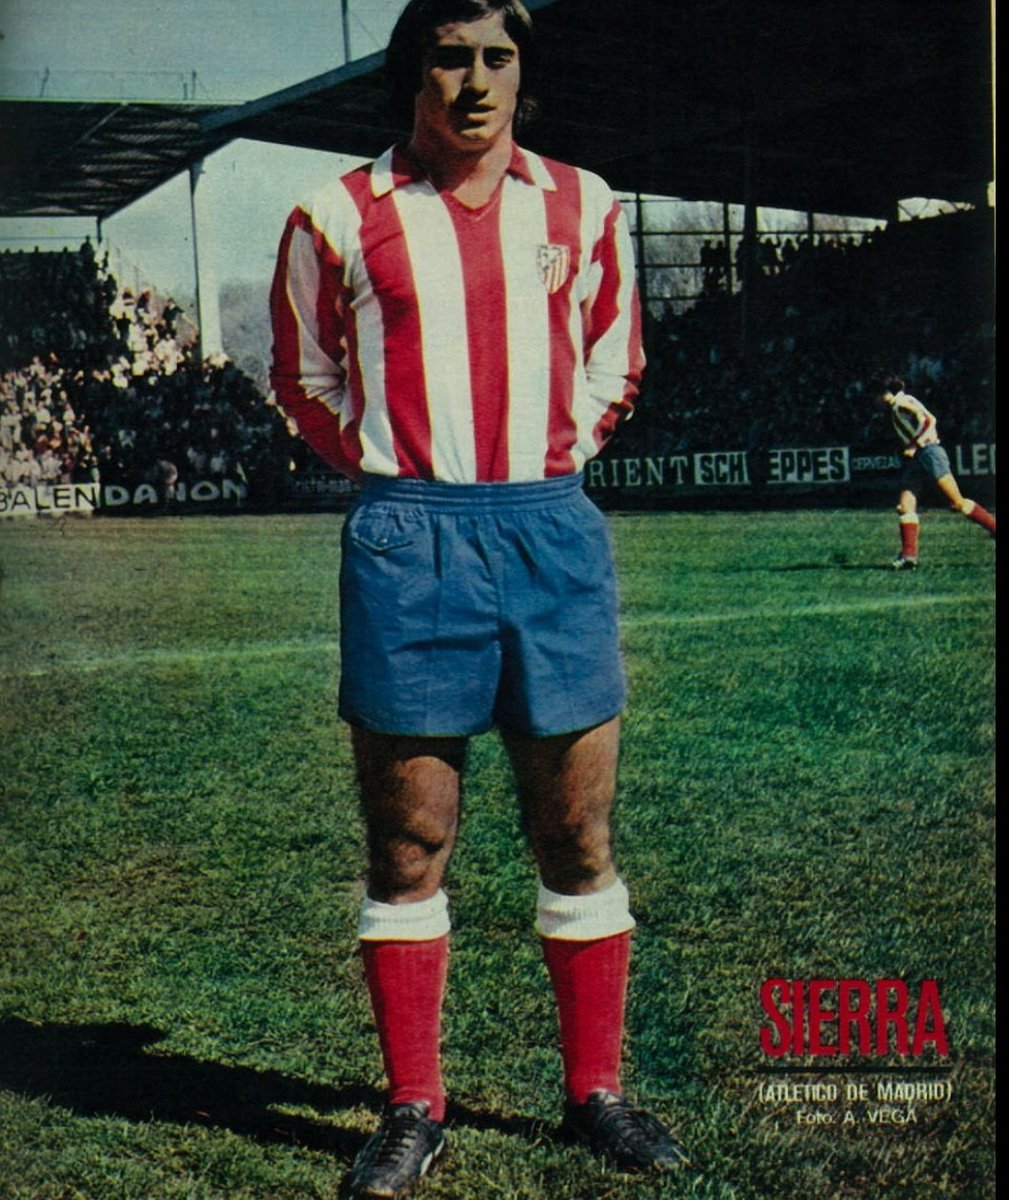 Il arrive donc pour la première fois dans un club de première division . Adelardo débutera sous le maillot rojiblanco le 13 Septembre 1959 .Aligné au millieu comme depuis ses débuts , il inscrira son premier but face à Las Palmas après seulement 11 minutes de jeux !